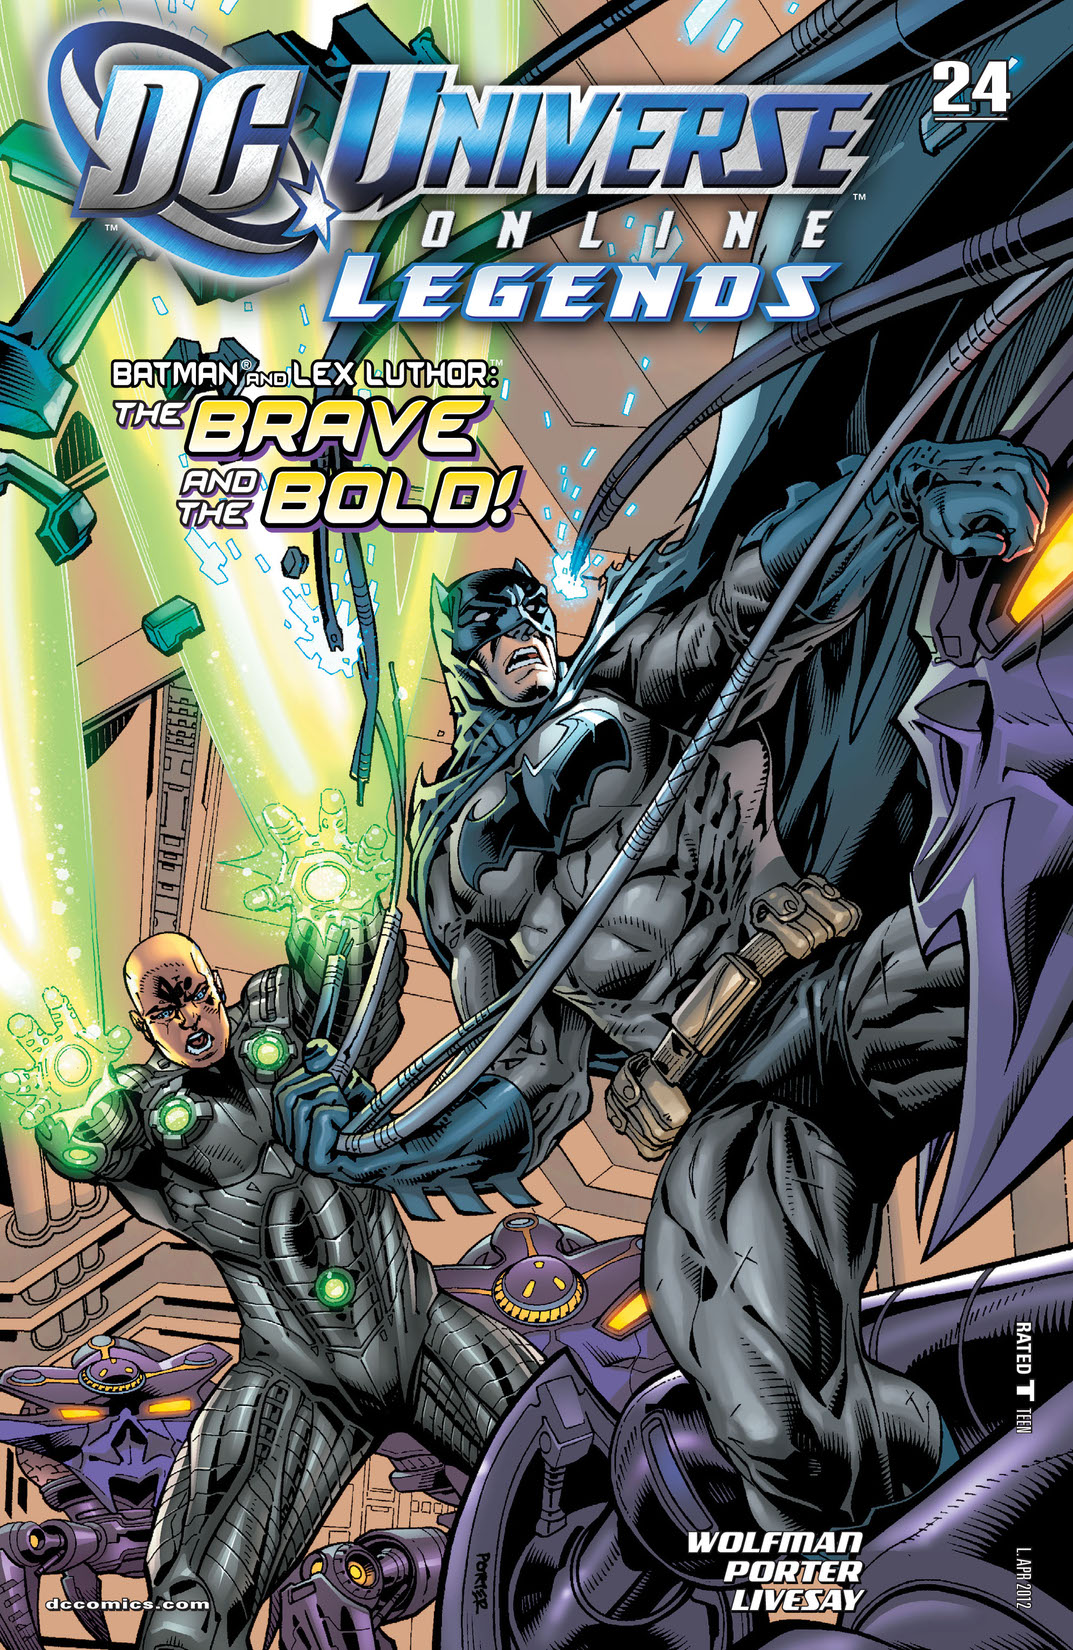 DC Universe Online Legends #24 preview images